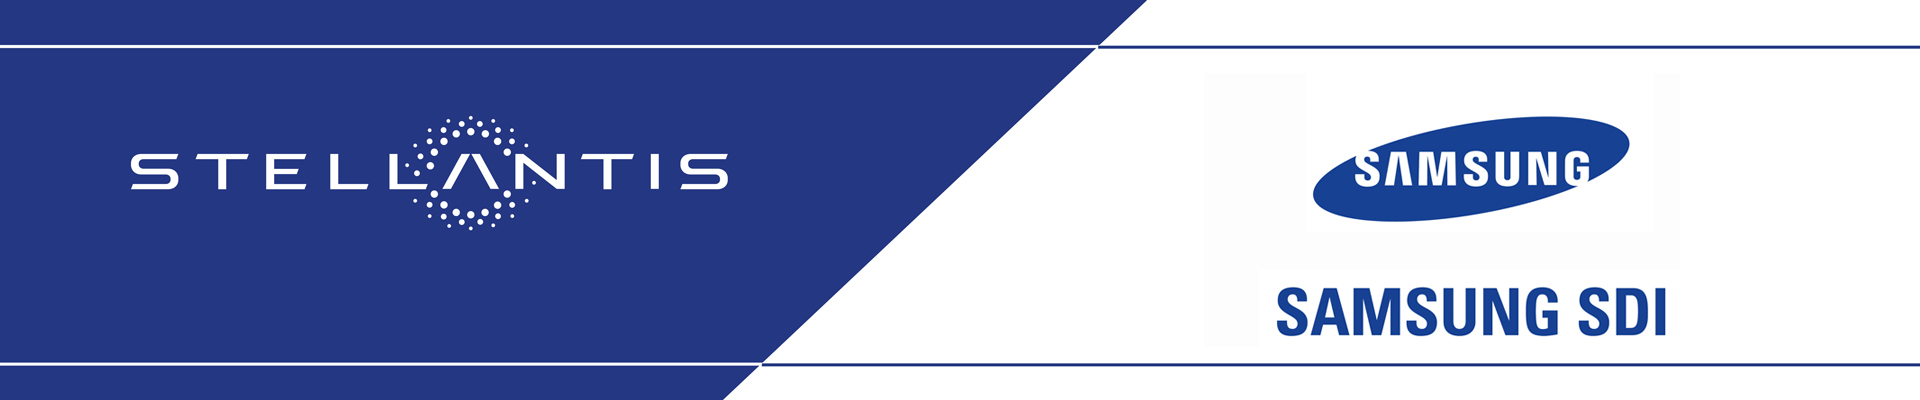 Immagine di Stellantis e Samsung logo